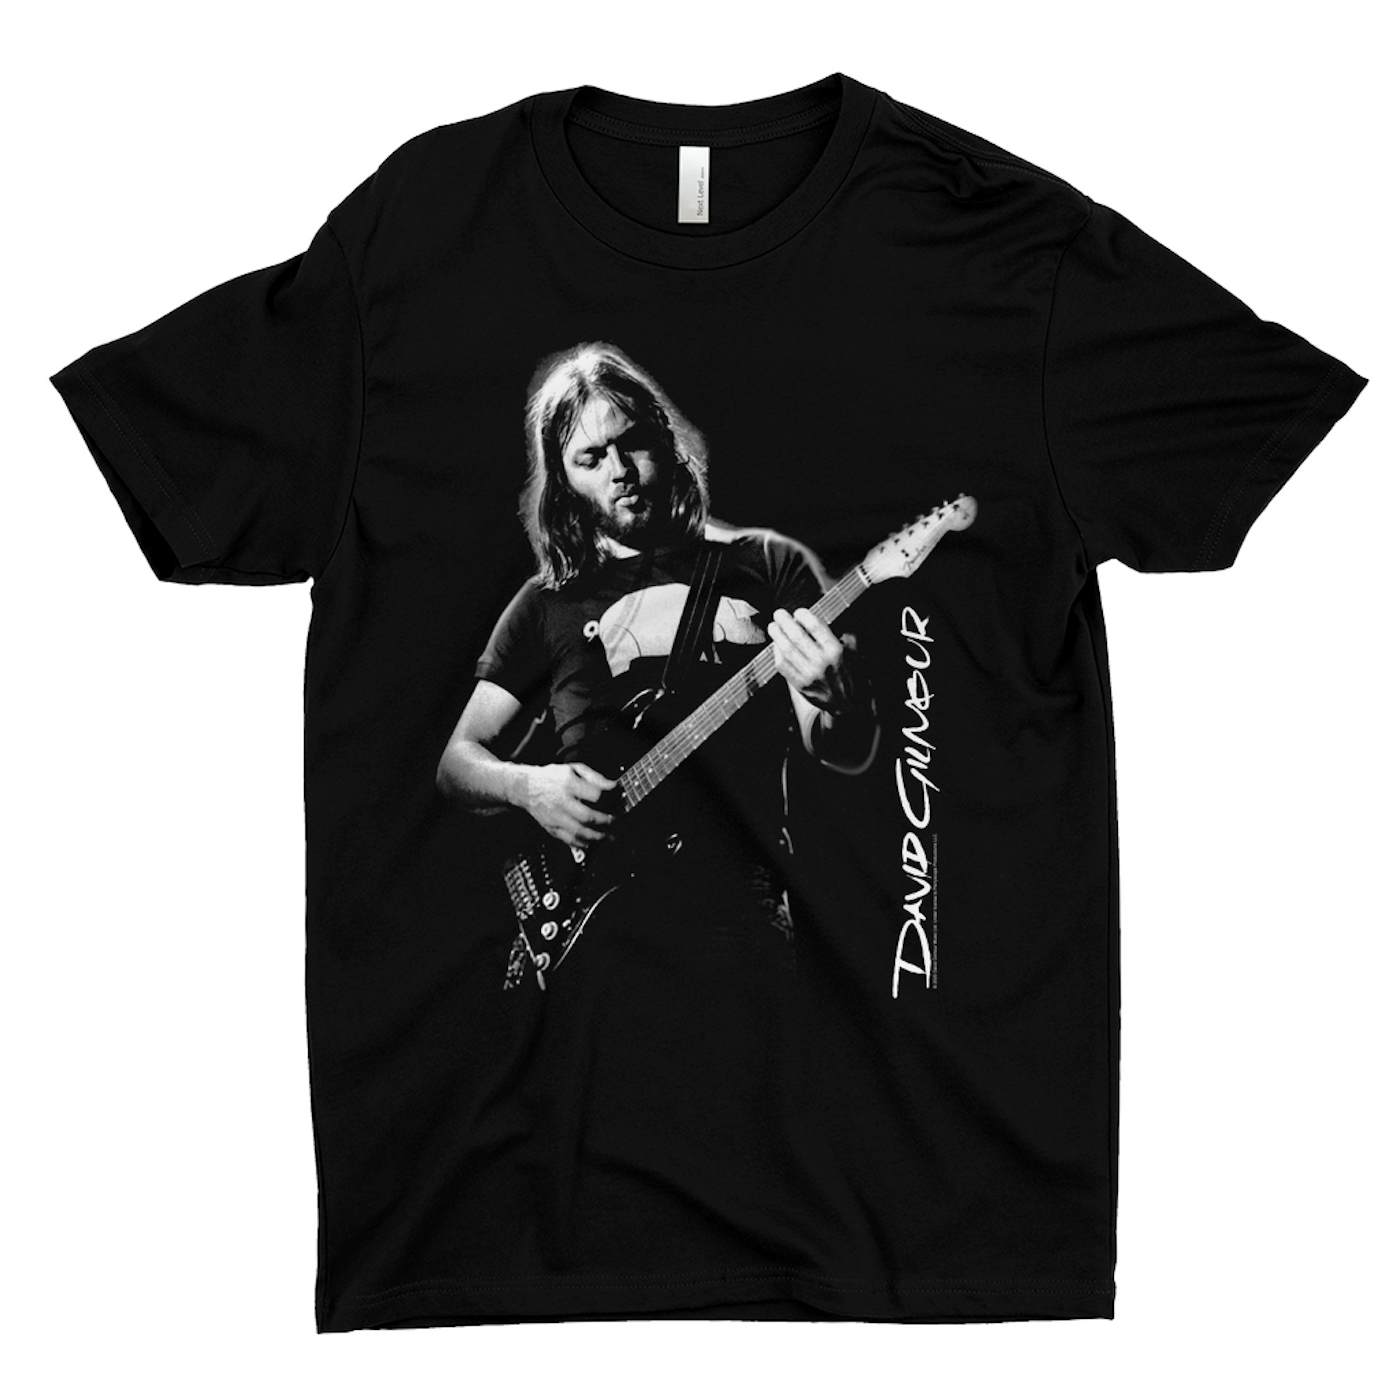 David Gilmour T-Shirt | Young David Gilmour Of Pink Floyd David Gilmour Shirt